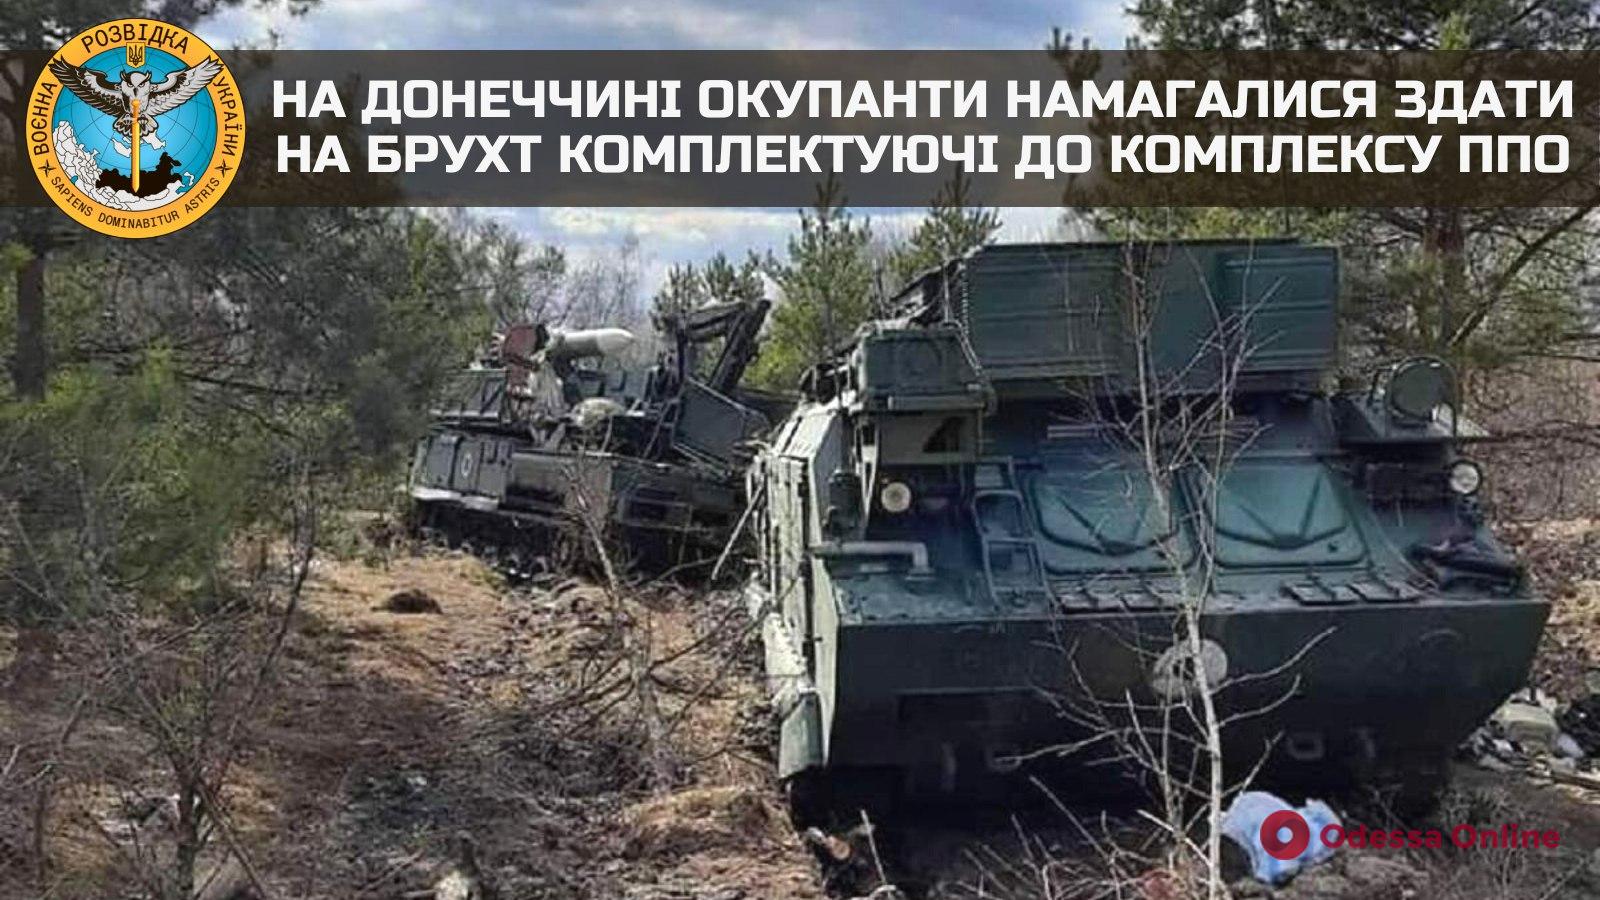 Российский менталитет: в Донецкой области оккупанты пытались сдать на металлолом комплектующие к комплексу ПВО, но их подвела жадность